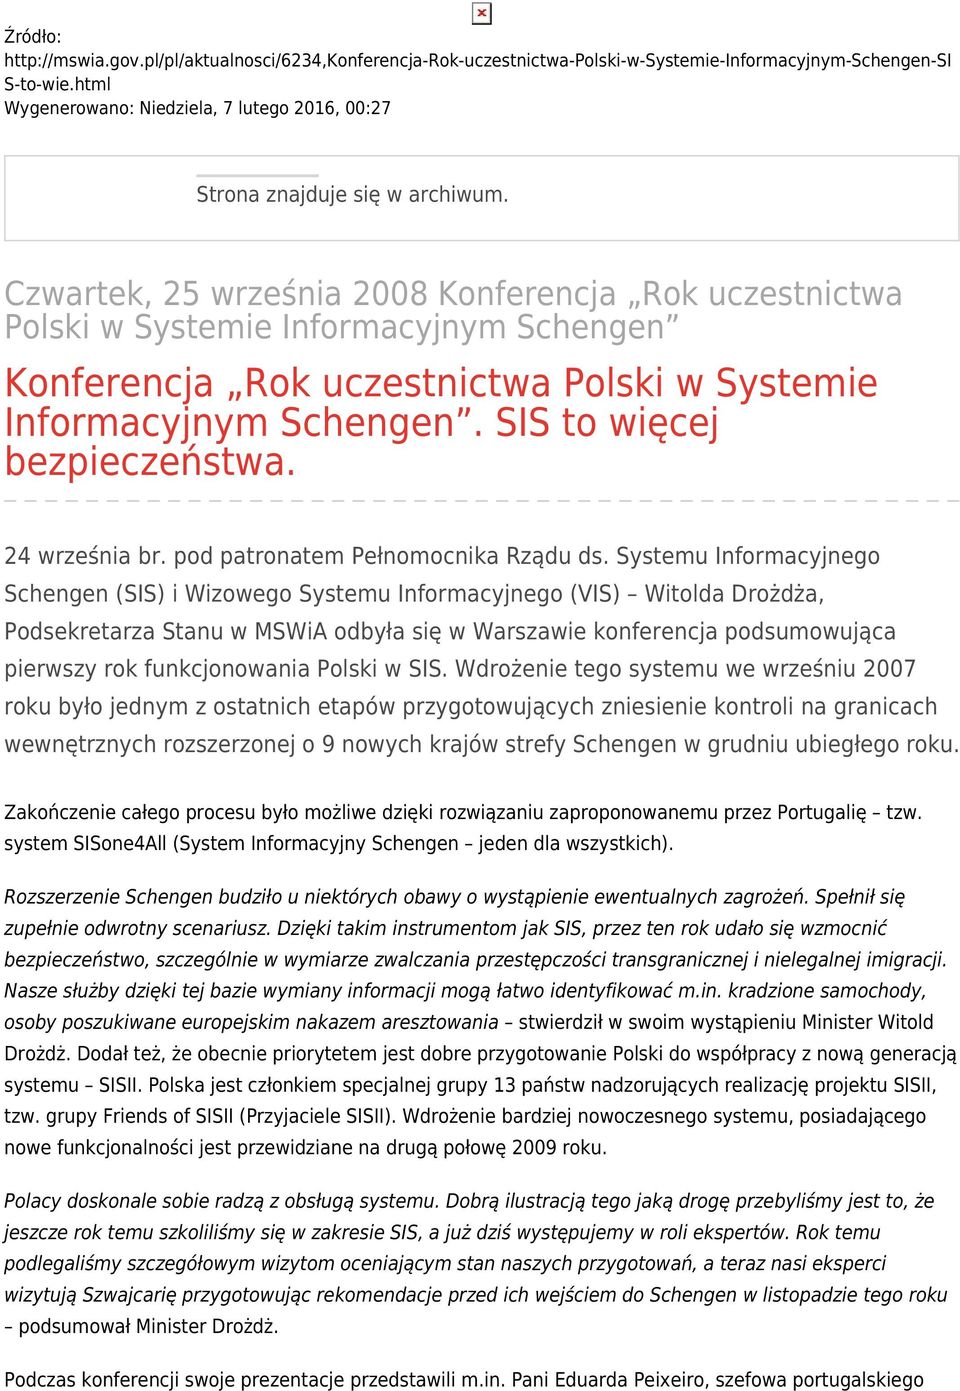 Czwartek, 25 września 2008 Konferencja Rok uczestnictwa Polski w Systemie Informacyjnym Schengen Konferencja Rok uczestnictwa Polski w Systemie Informacyjnym Schengen. SIS to więcej bezpieczeństwa.